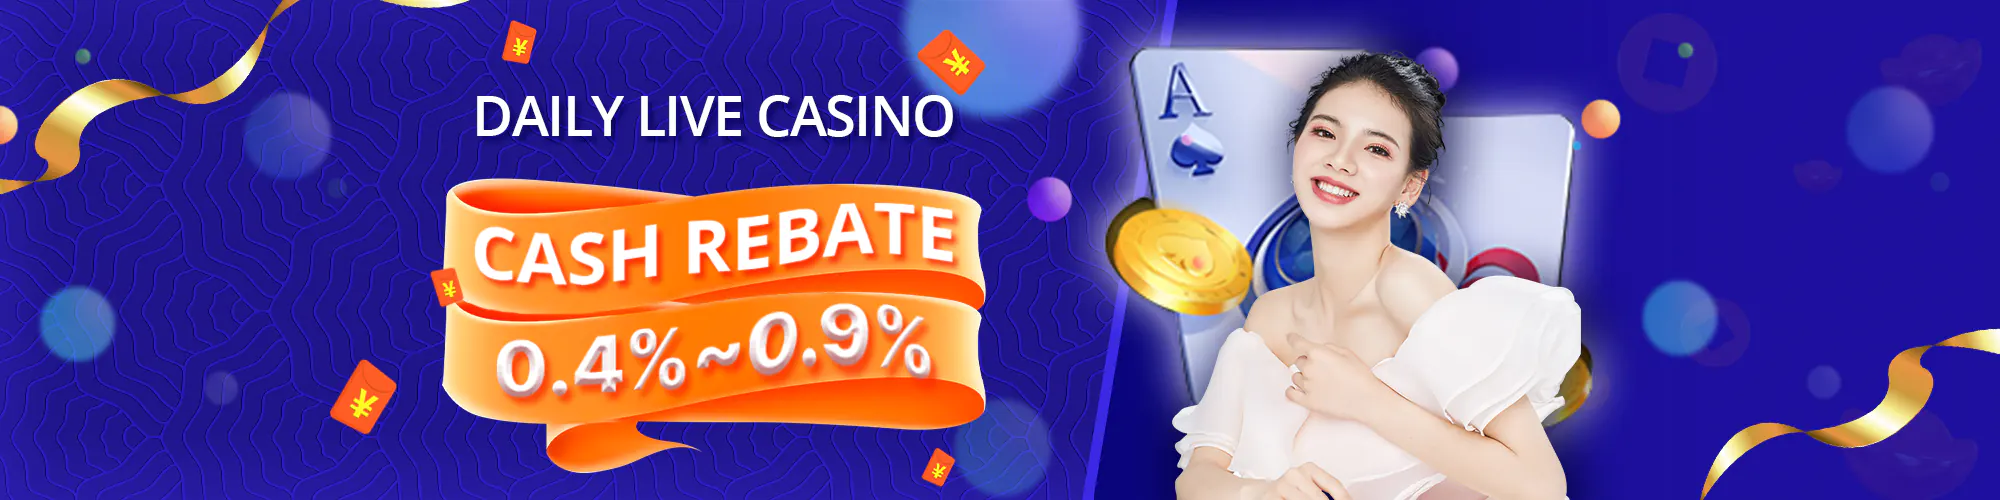 Live Casino Rebate 0.4%~0.9%